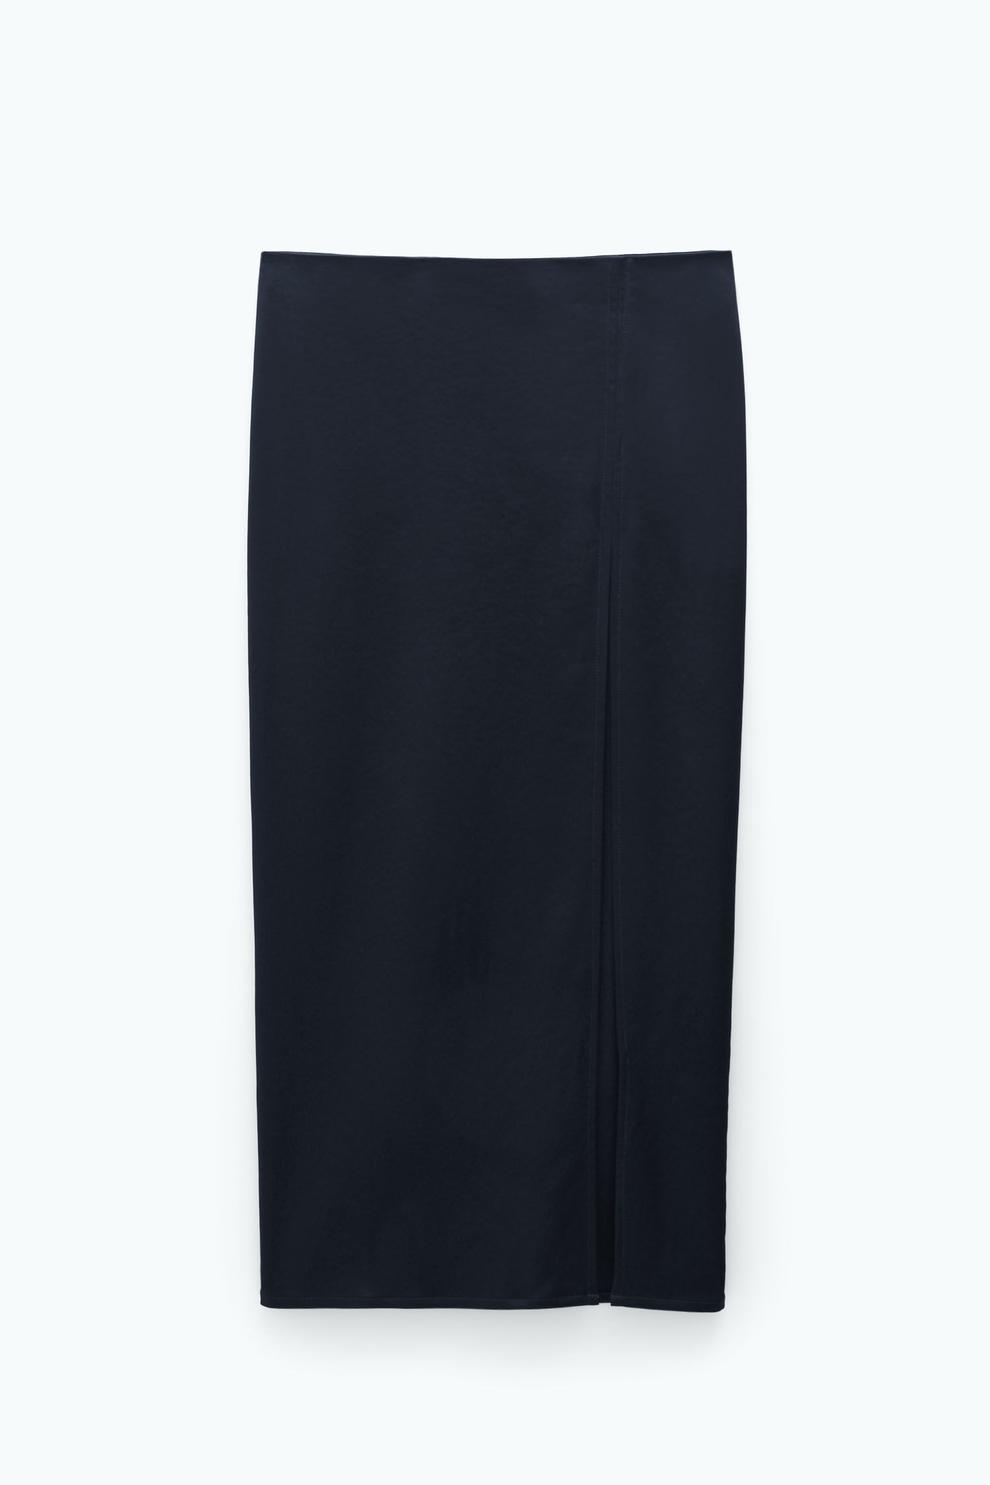 Silk Pencil Skirt för 2700 kr på Filippa K